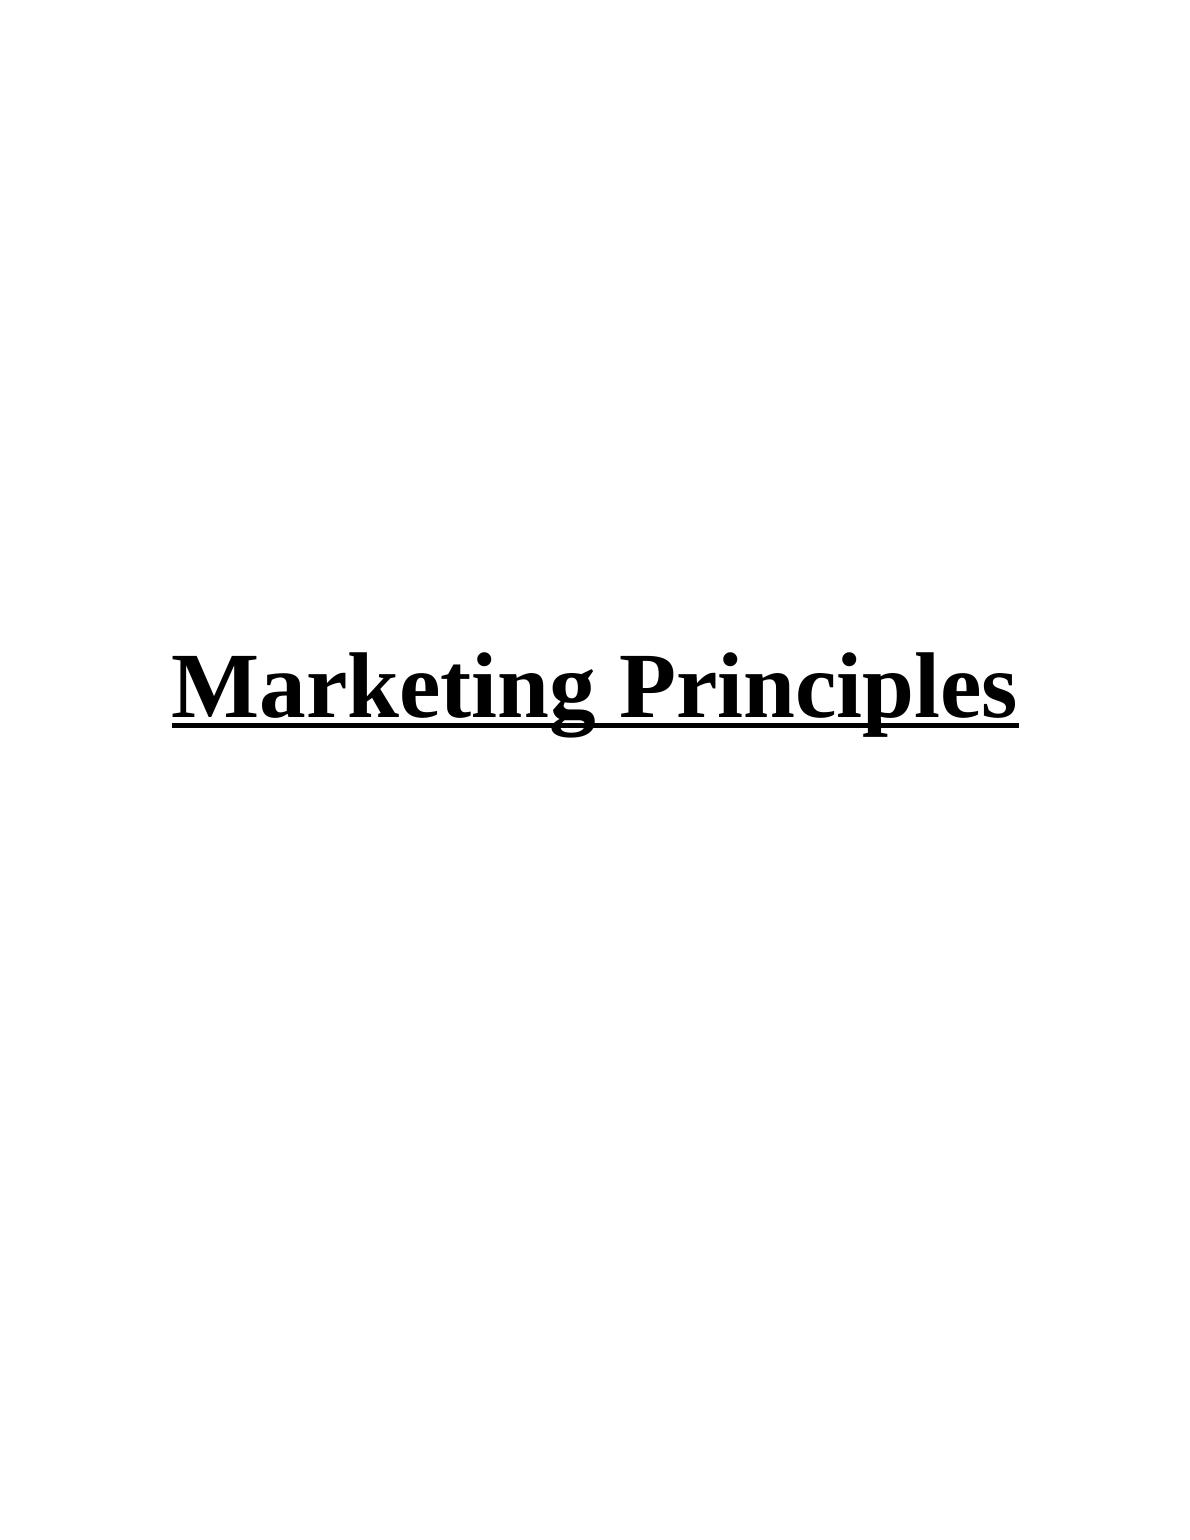 Marketing Process Elements | McDonald’s_1